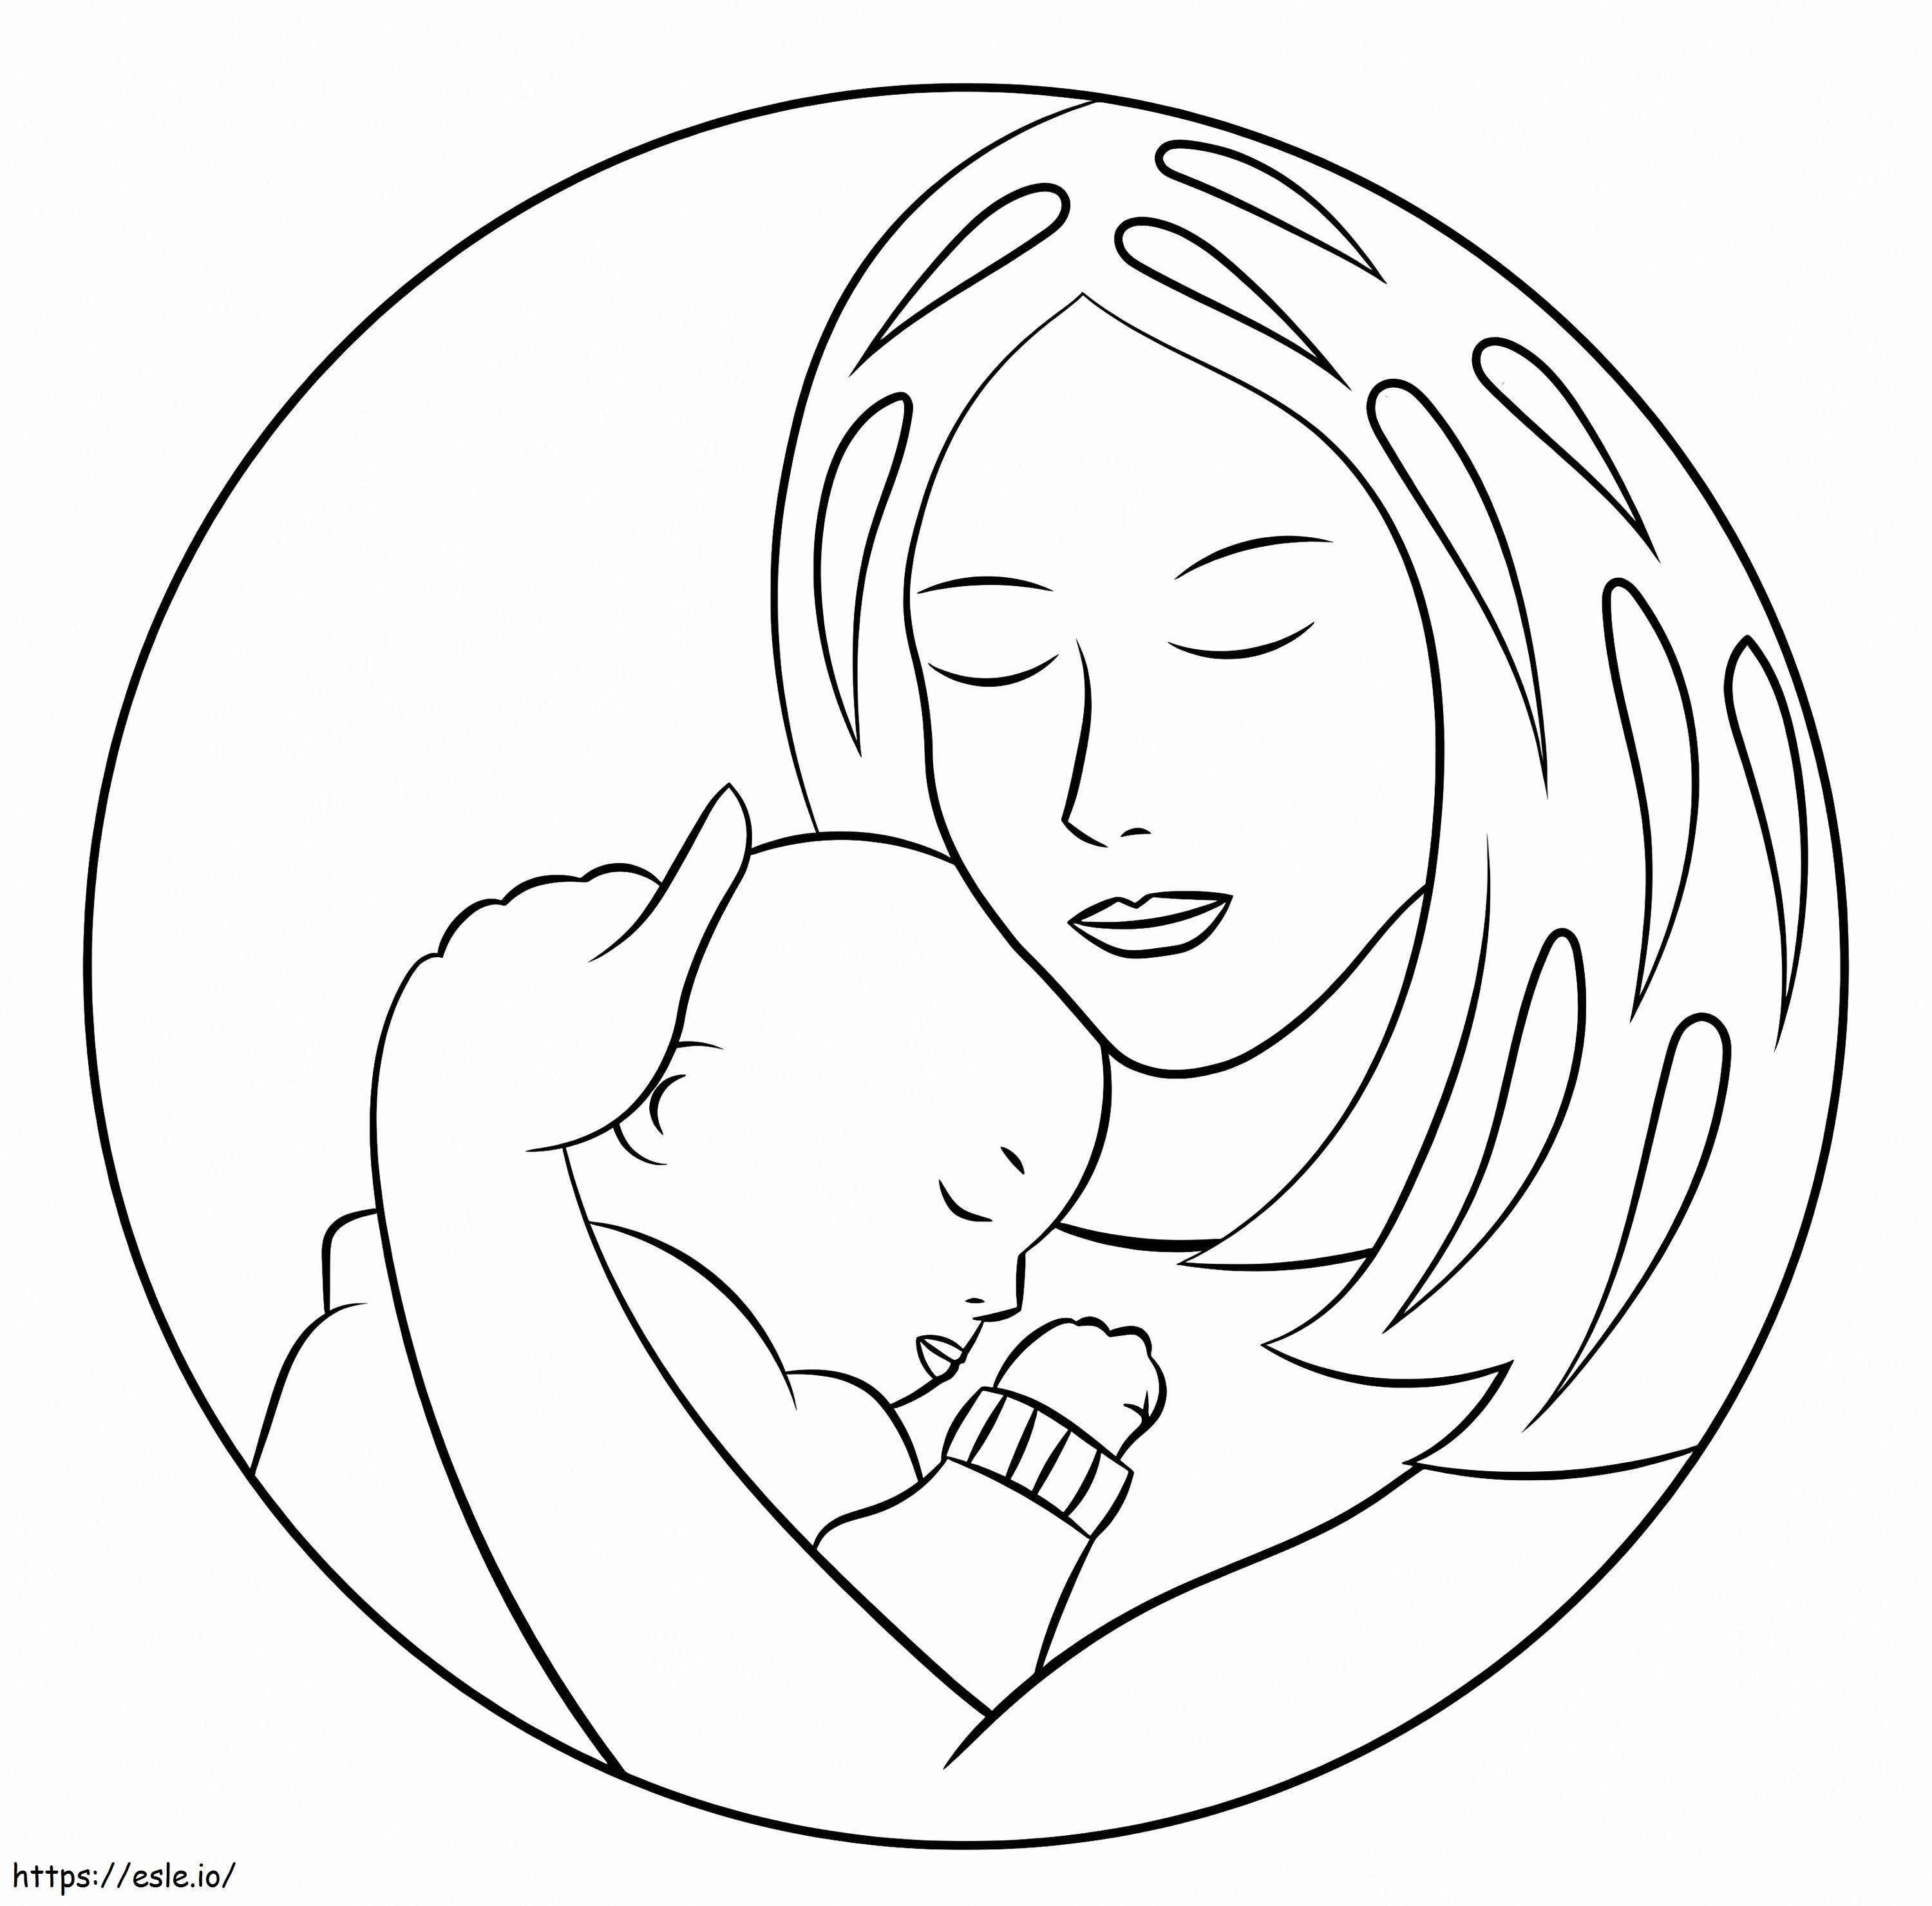 Coloriage Une mère et un bébé à imprimer dessin